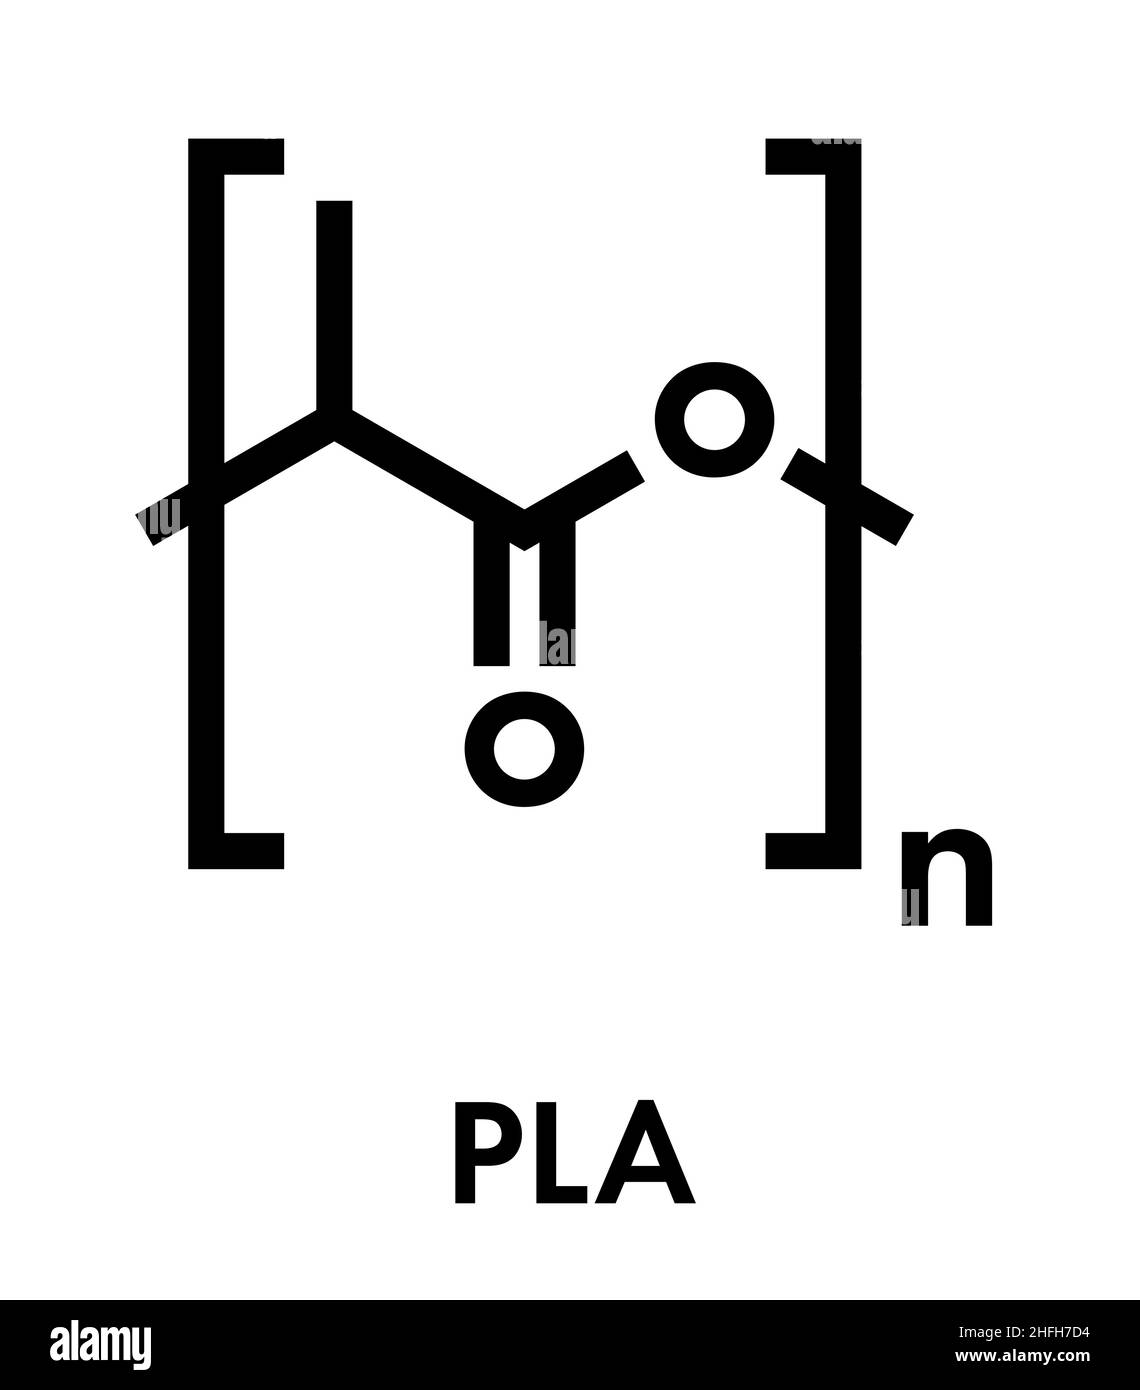 Acido polilattico (PLA, polilattide) bioplastica, struttura chimica. Compostabile polimero utilizzato in impianti medici, la stampa 3D, materiali per imballaggio, ecc. Illustrazione Vettoriale